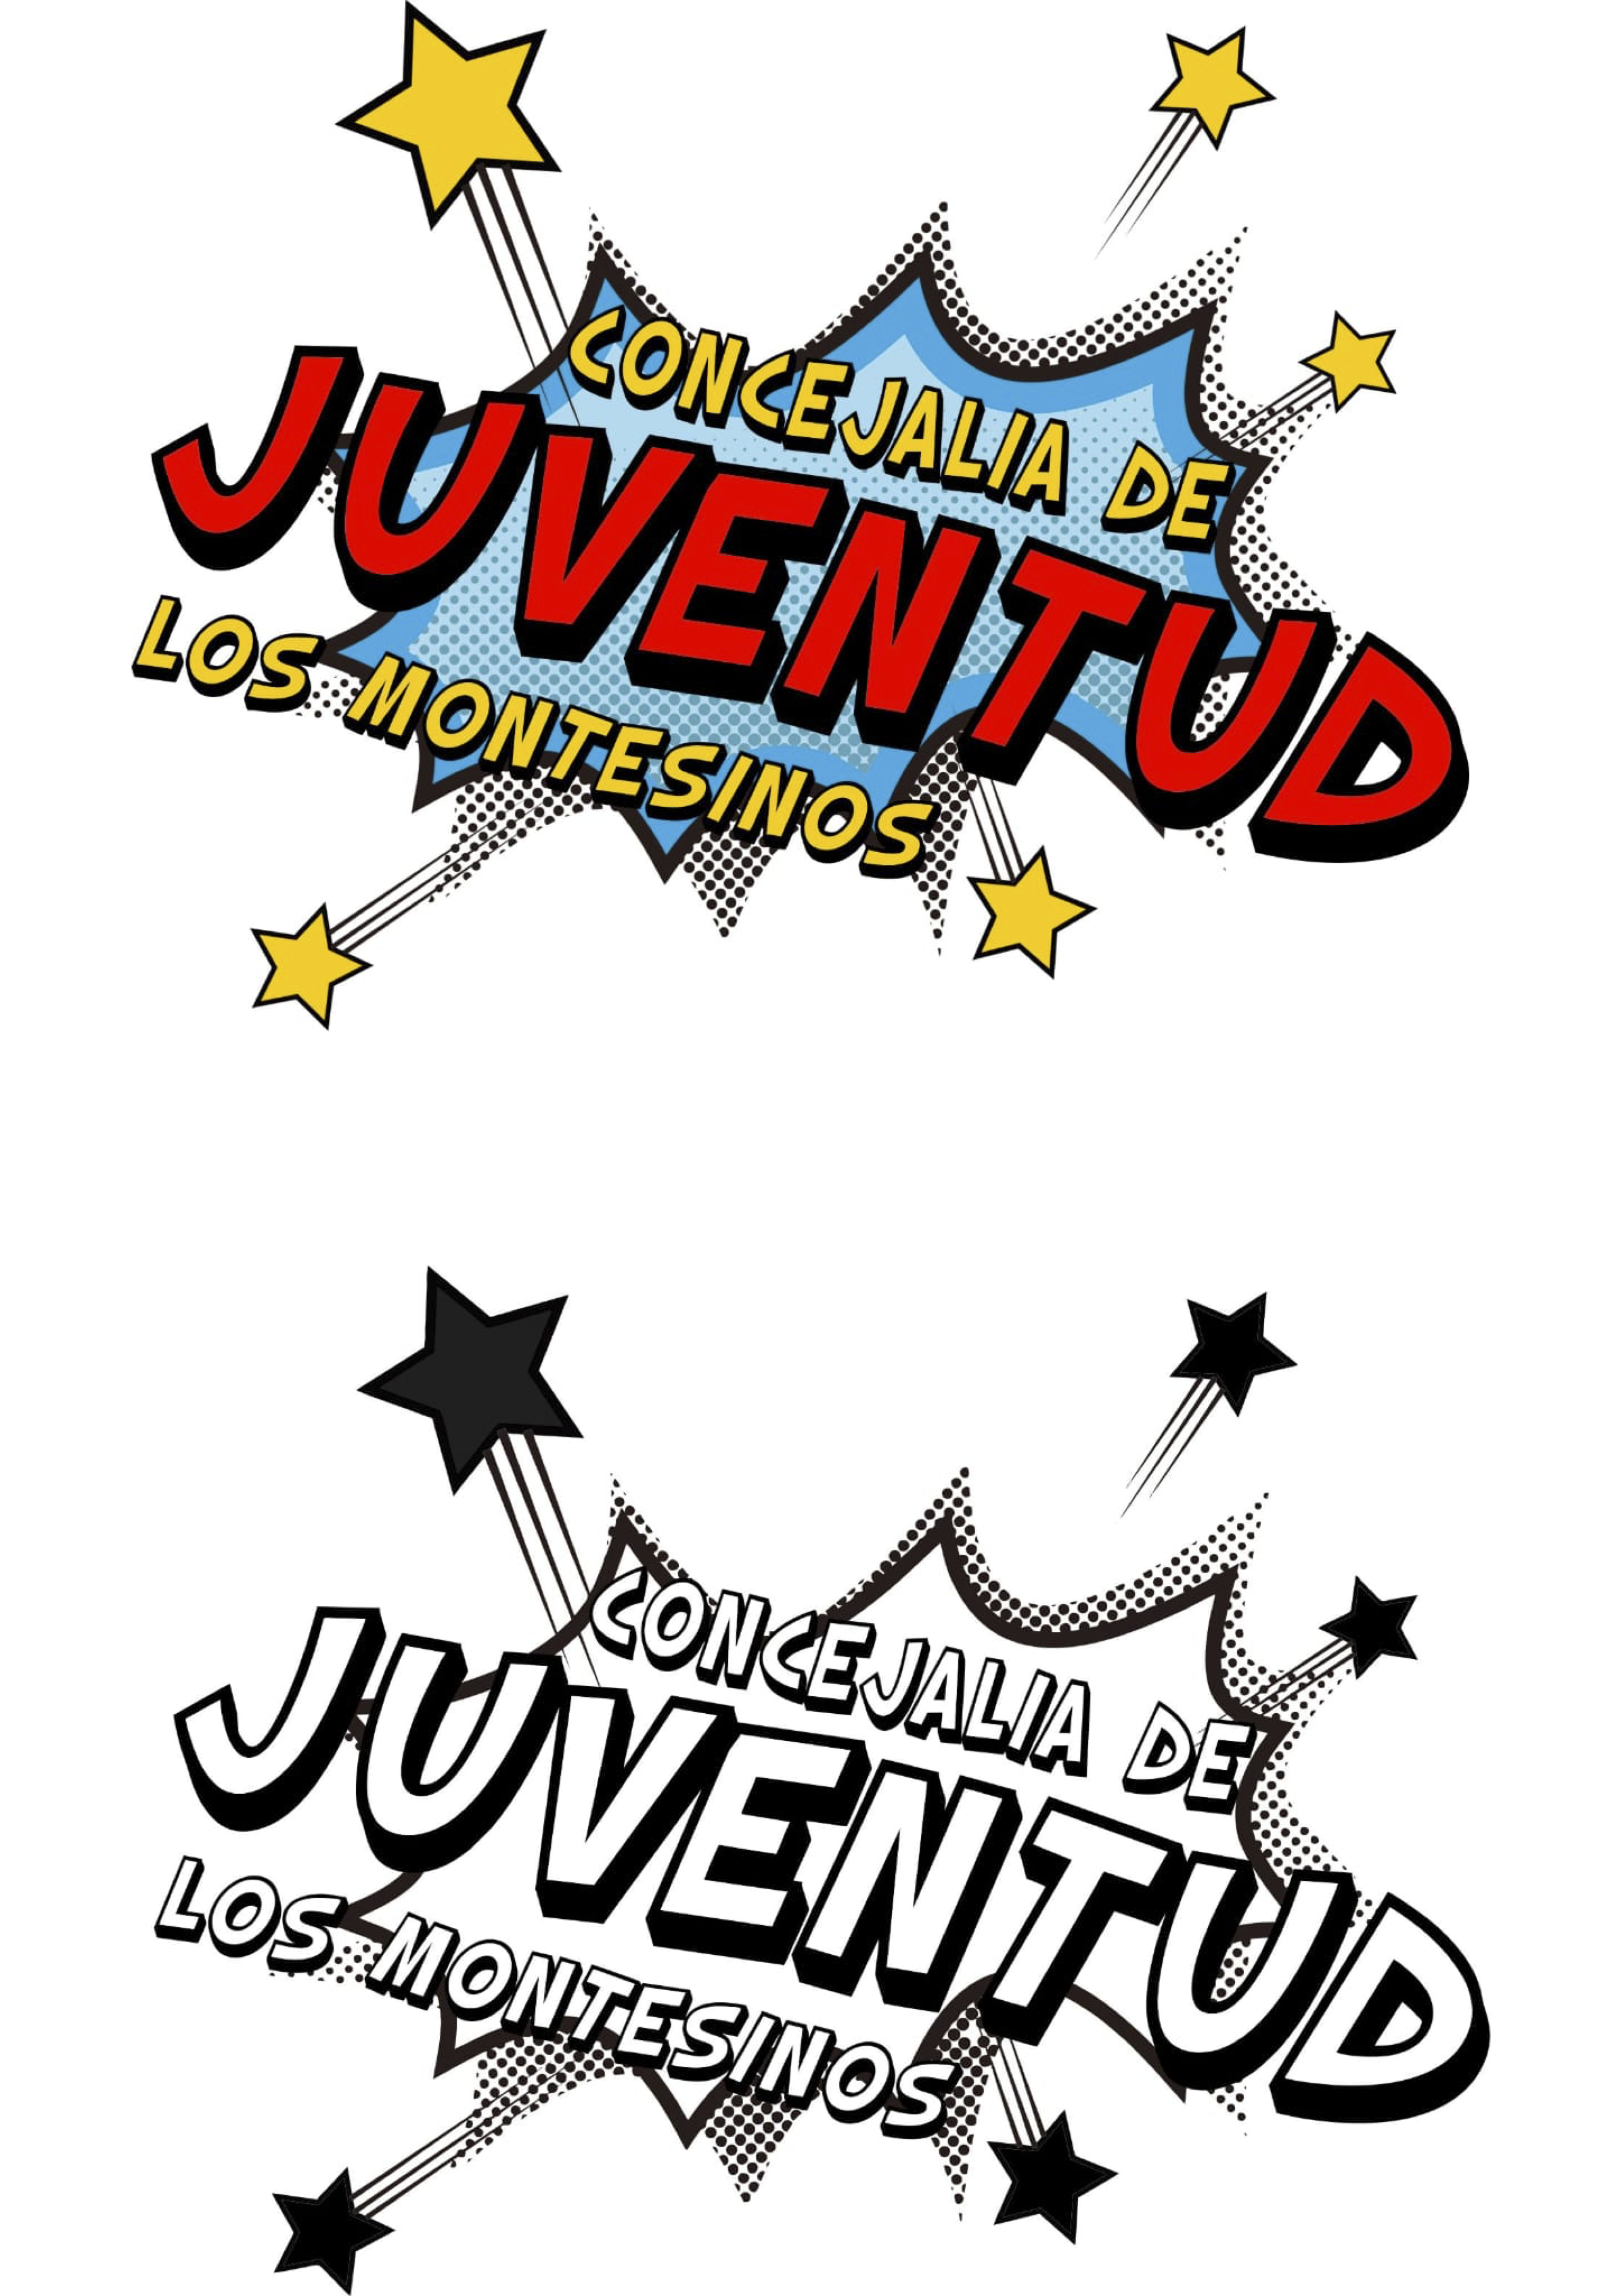 Concurs nou logo de la Regidoria de Joventut. Los Montesinos